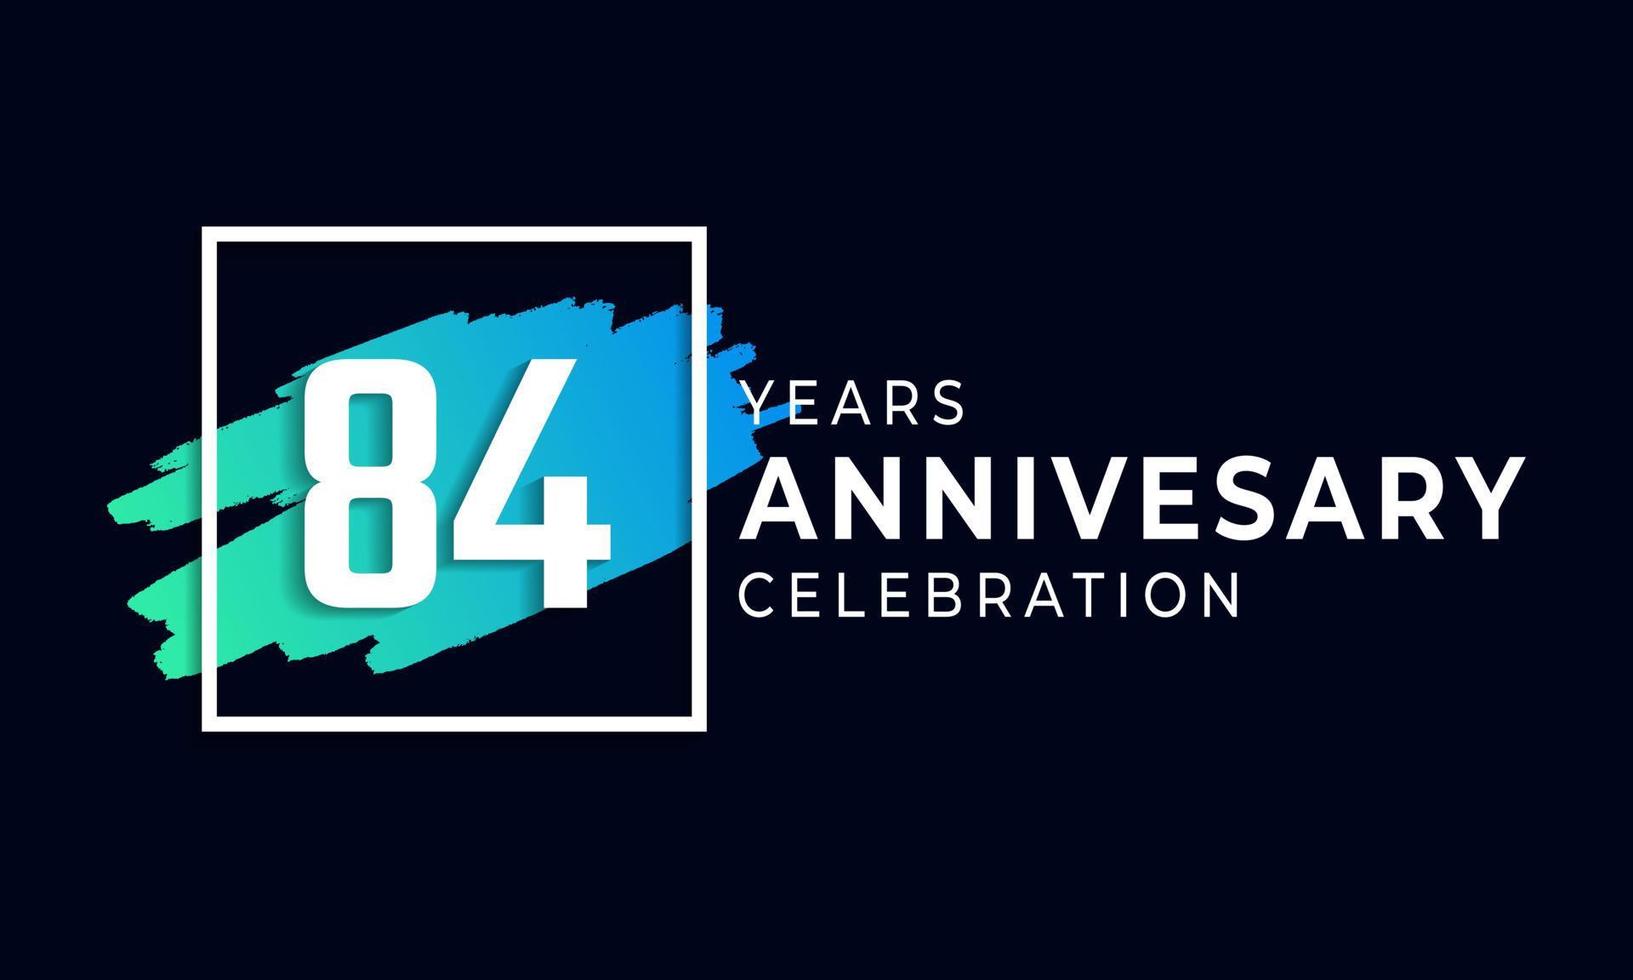 Célébration du 84e anniversaire avec une brosse bleue et un symbole carré. joyeux anniversaire salutation célèbre l'événement isolé sur fond noir vecteur